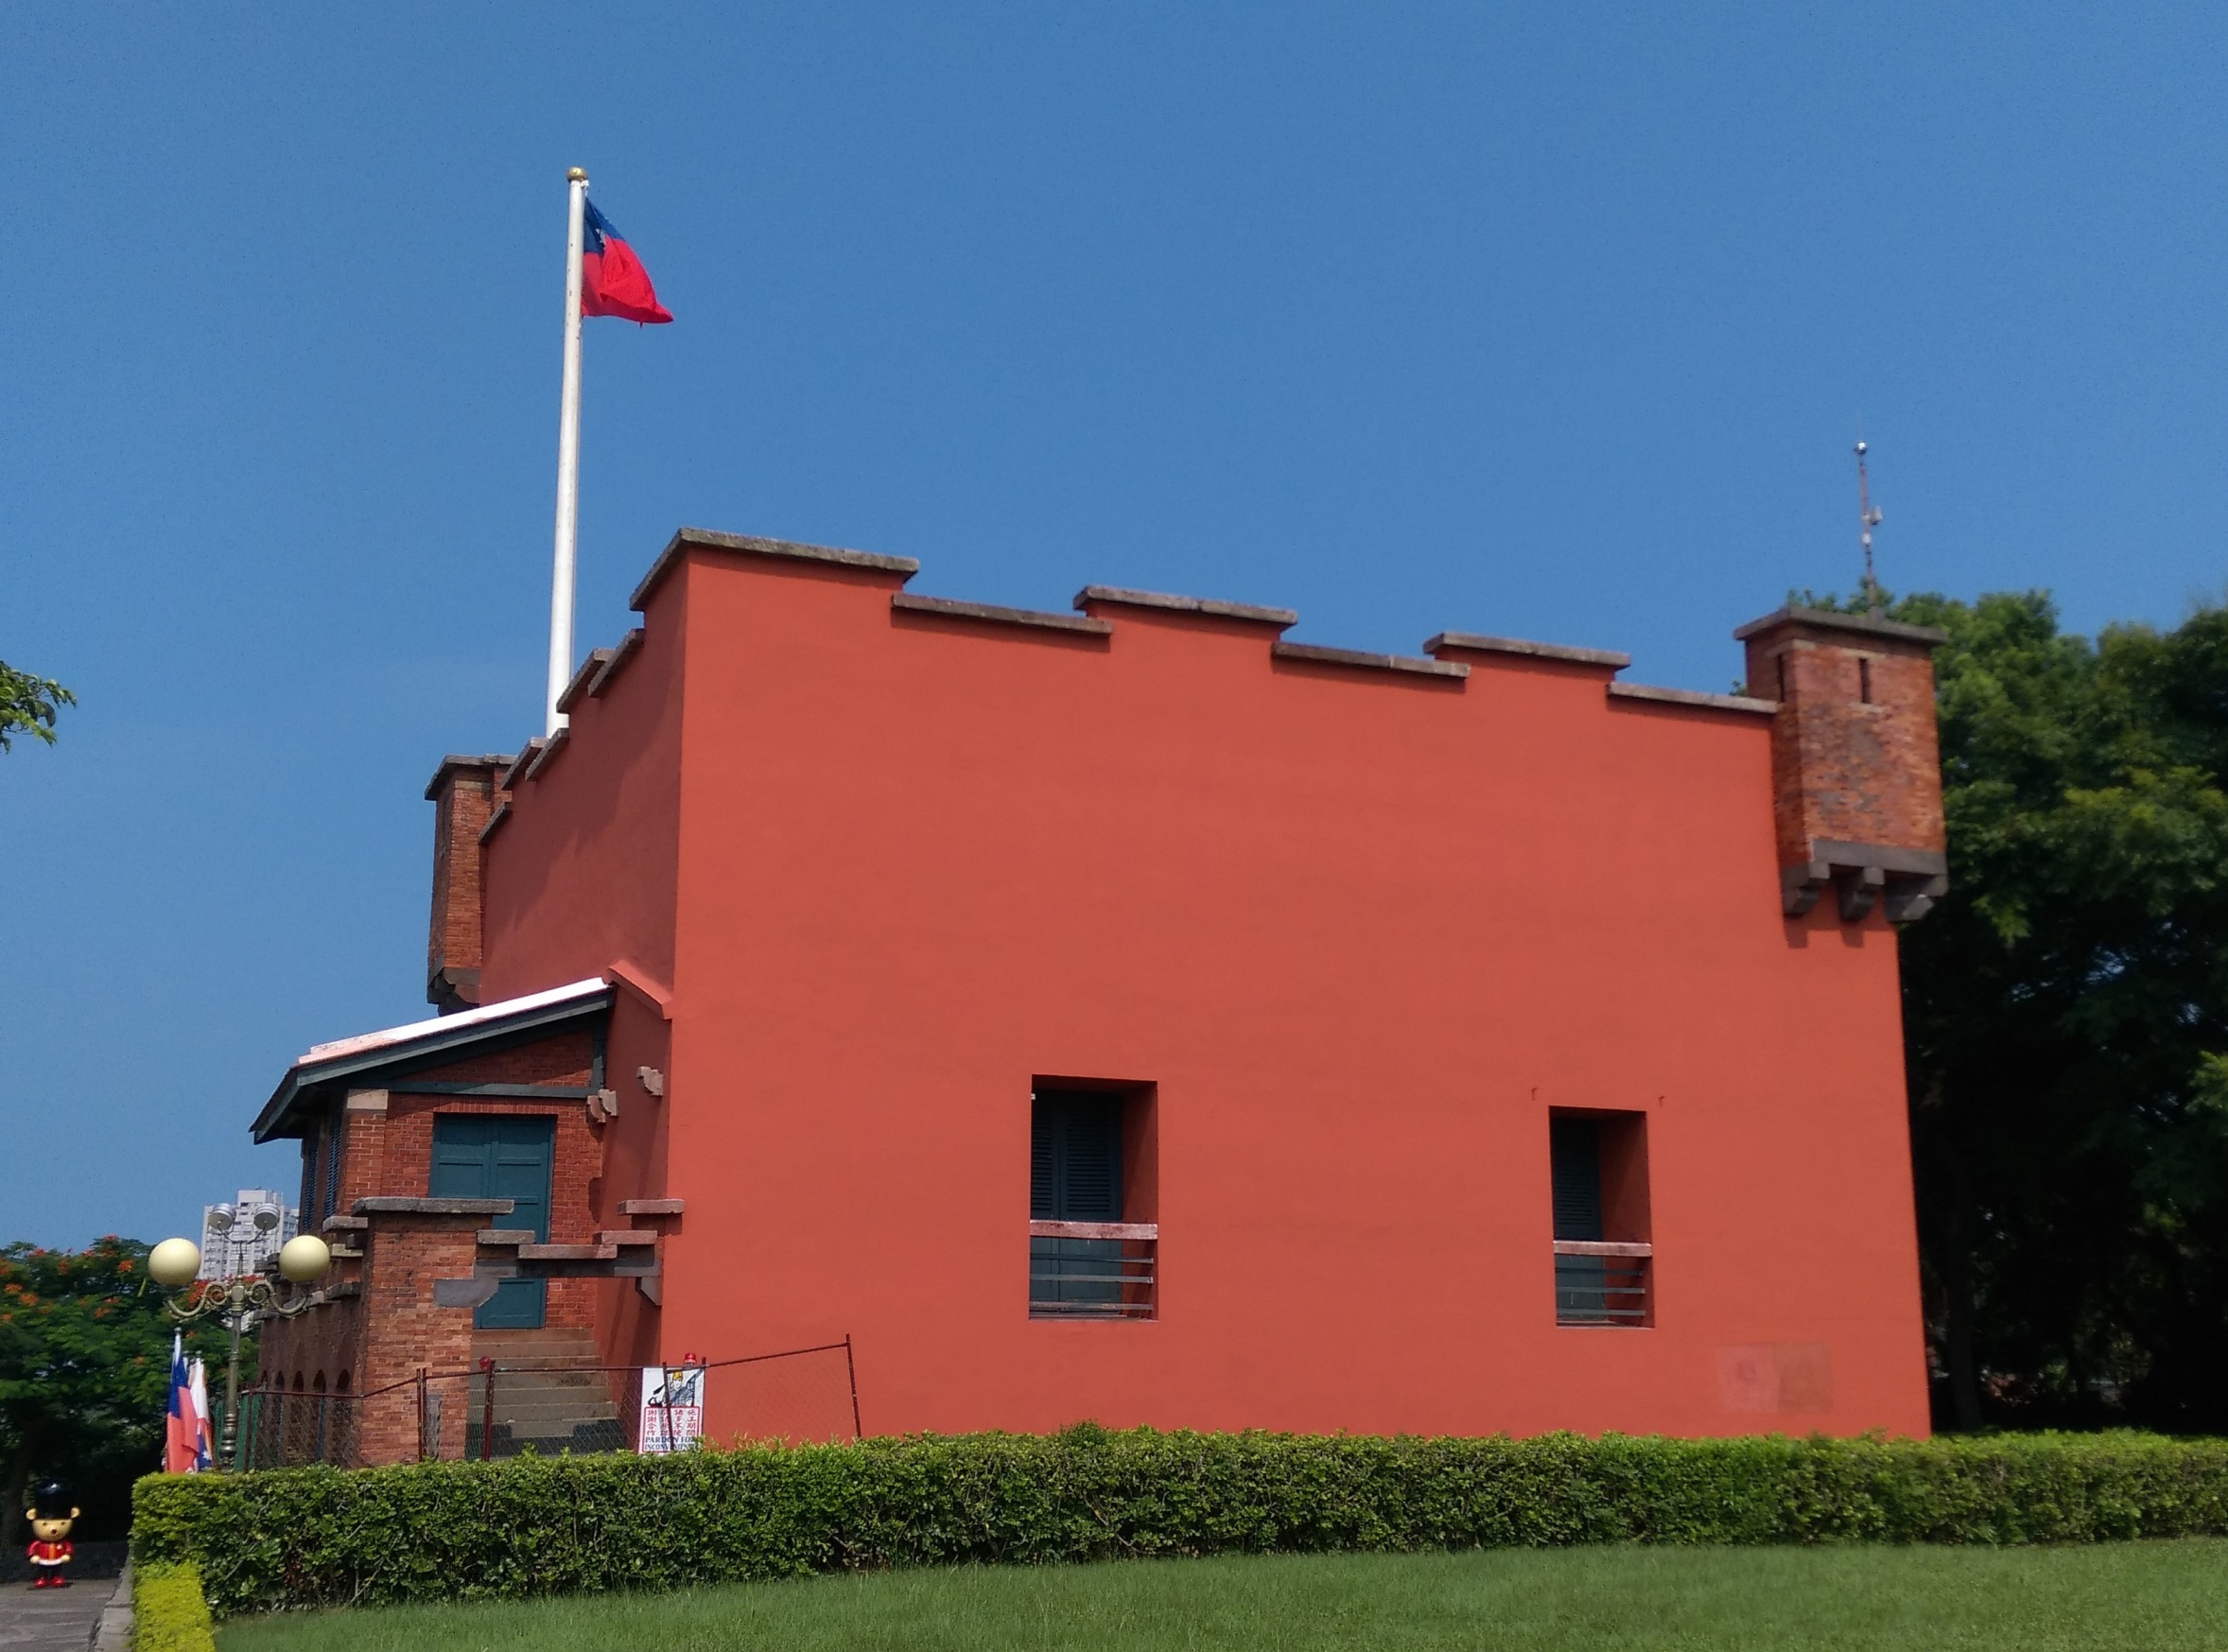 紅毛城主堡修復完工，即將於9月18日再度大開城門，歡迎民眾參觀。